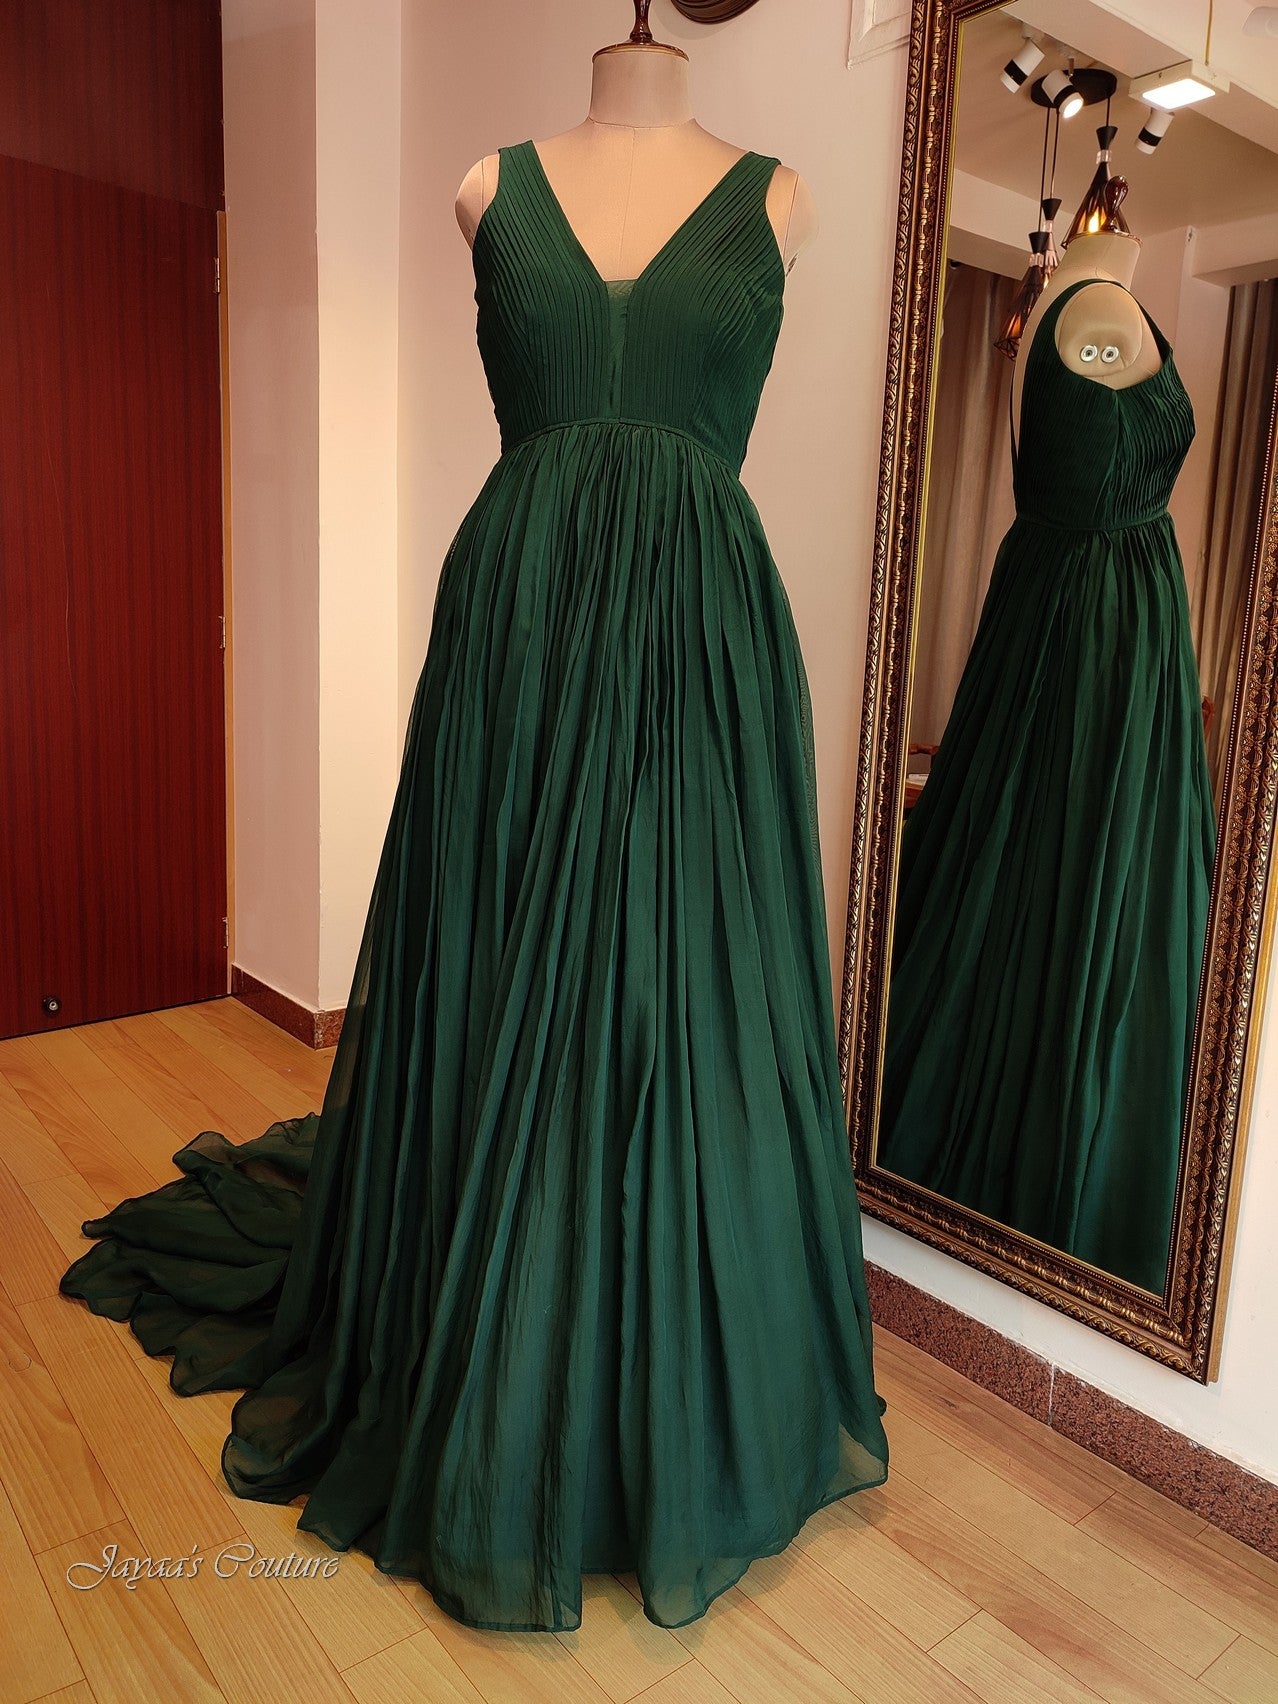 Bottle green gown